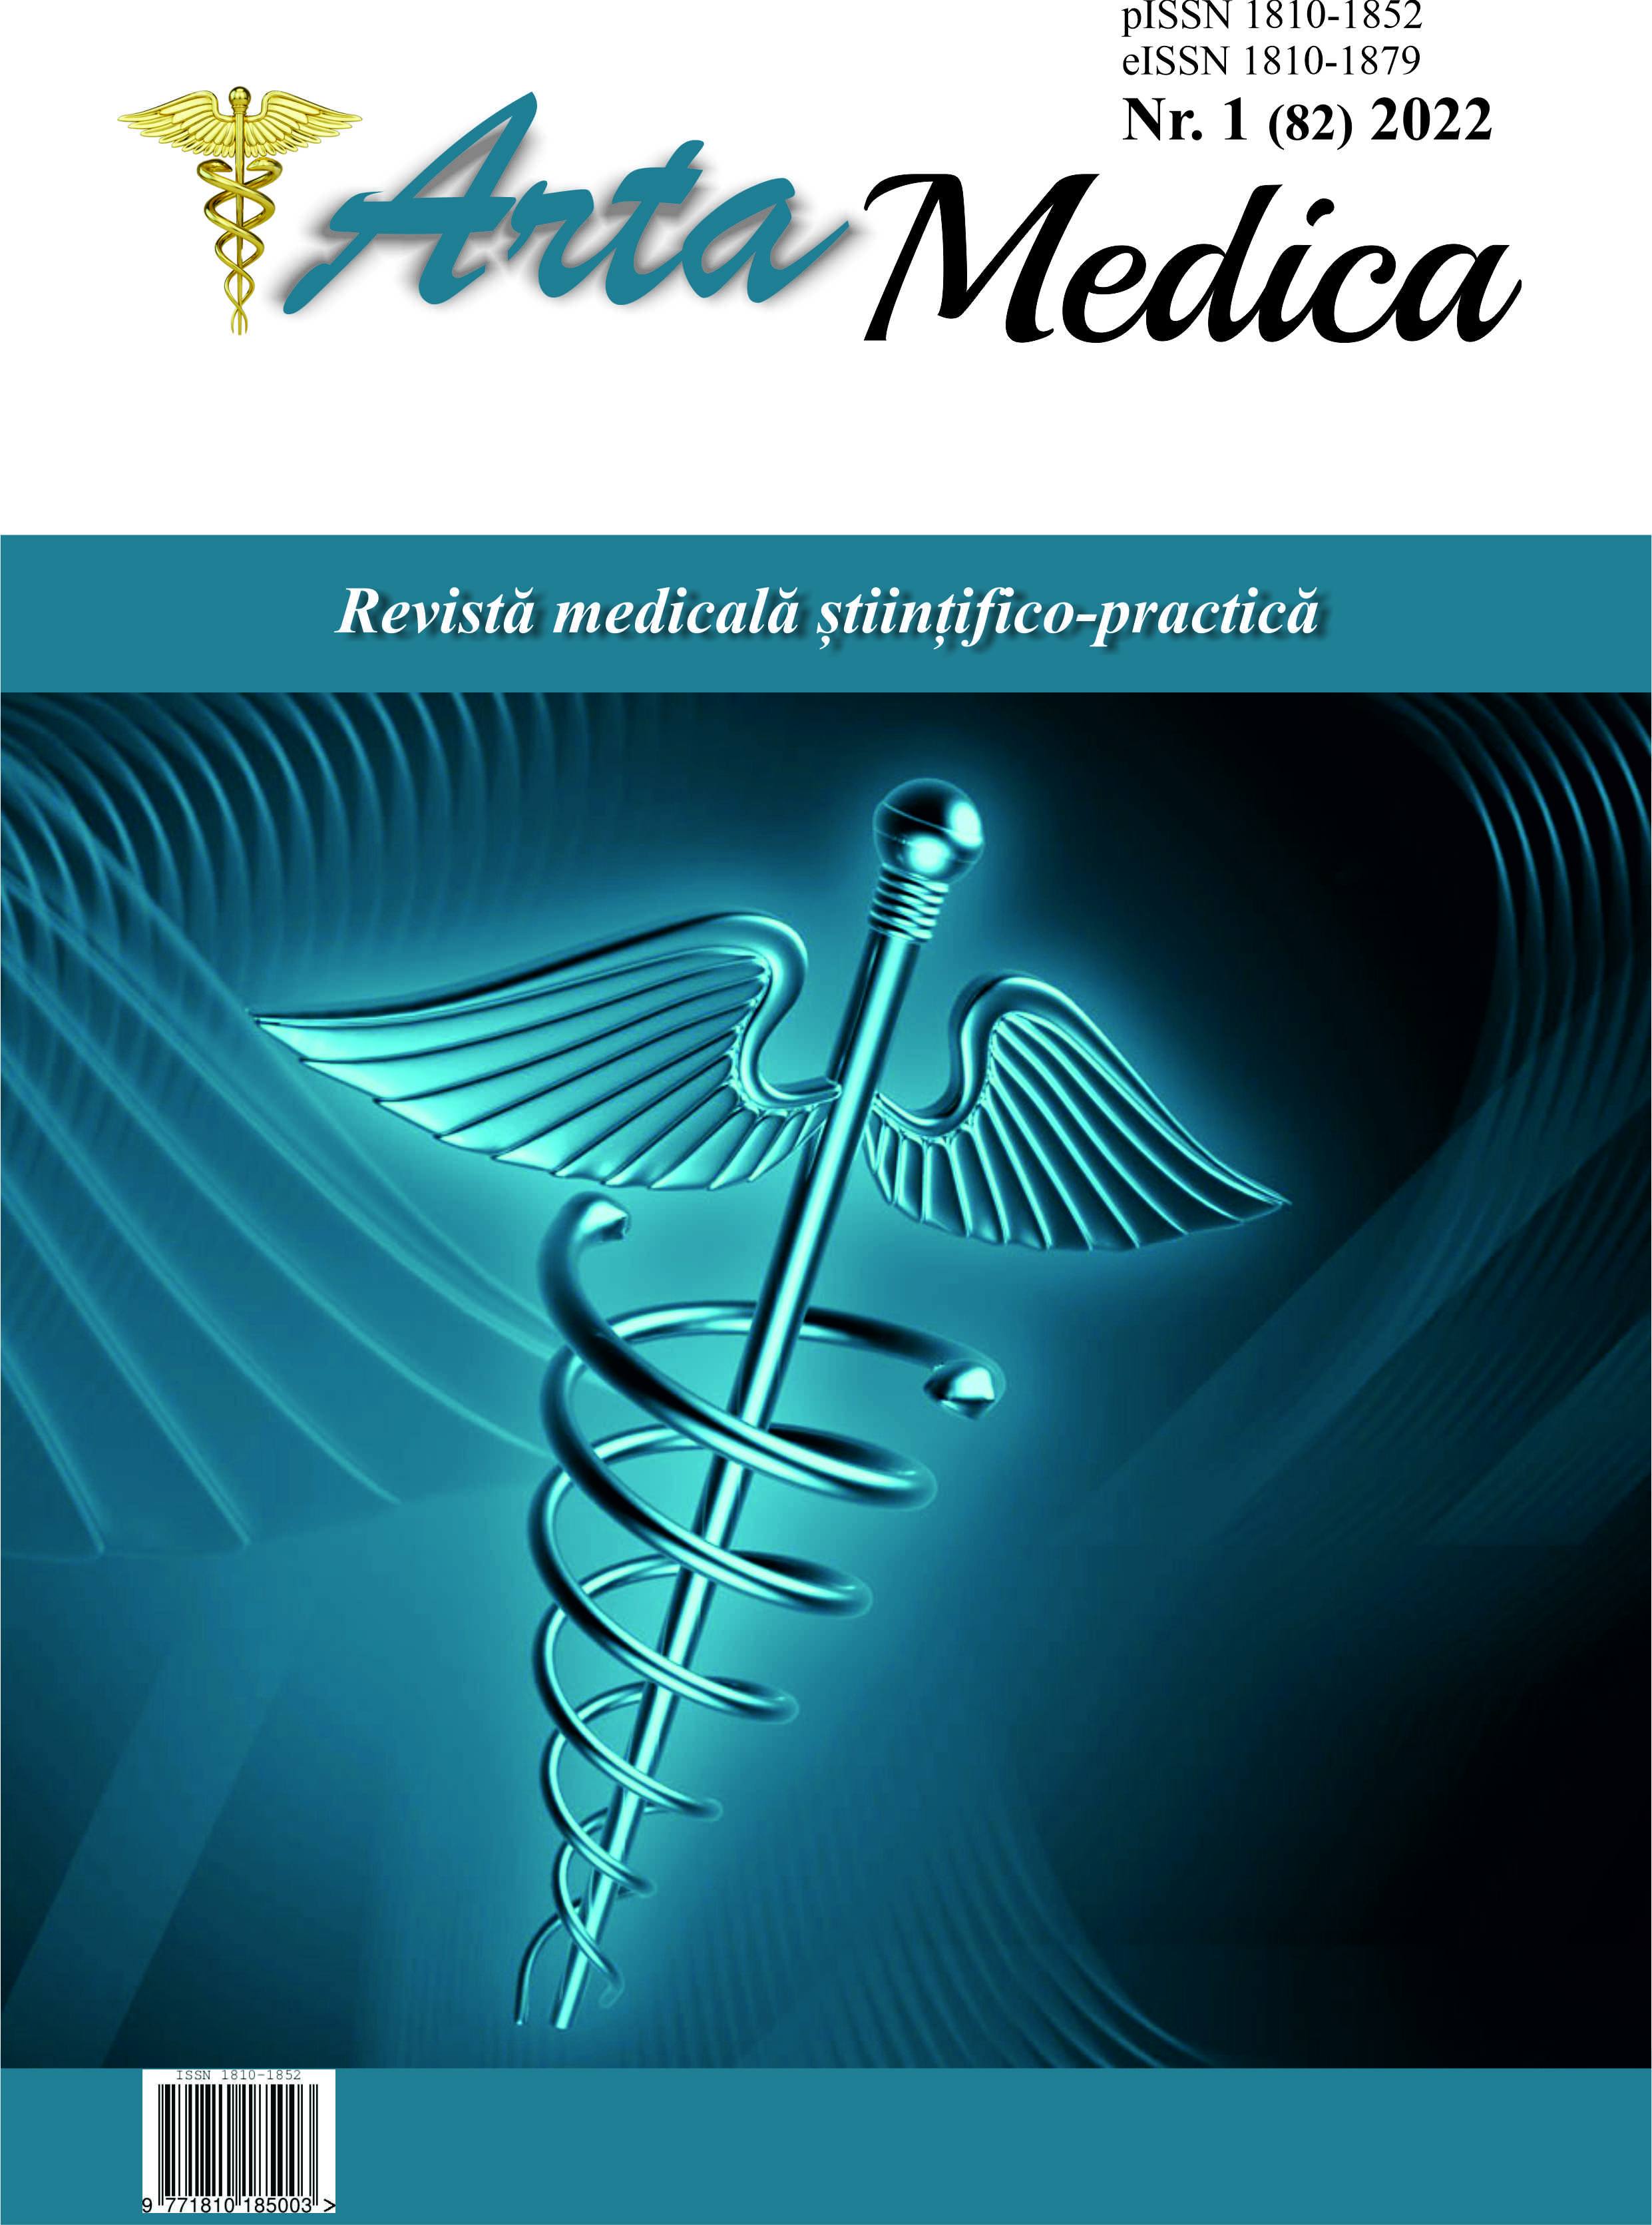 					View Vol. 82 No. 1 (2022): Arta Medica
				